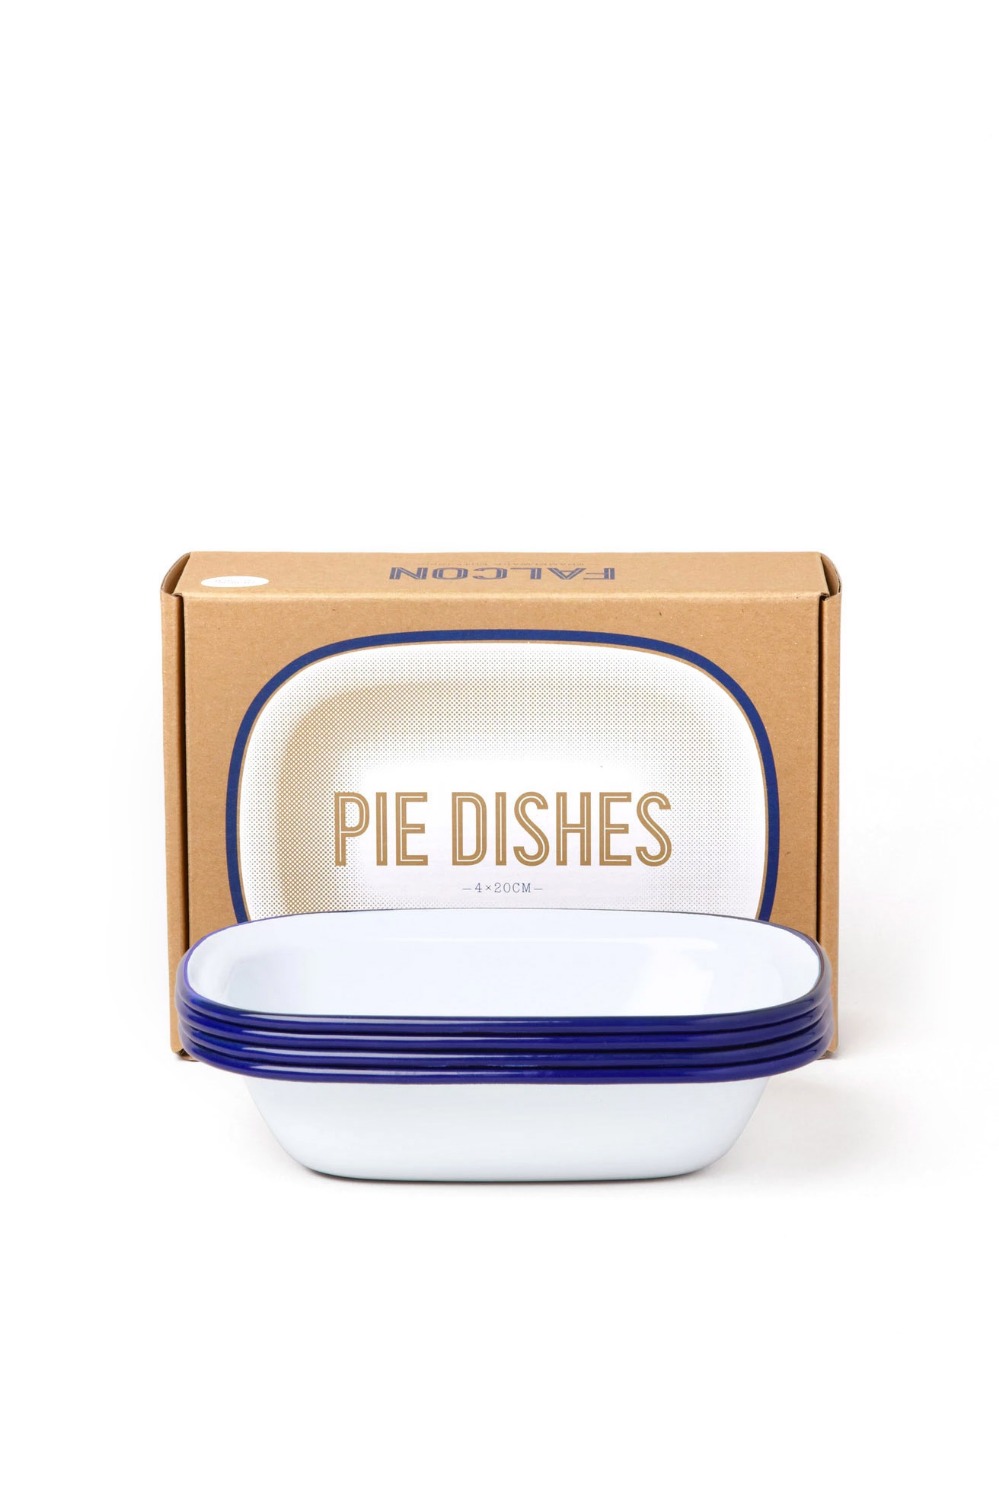 FALCON(팔콘) Pie Dishes - white